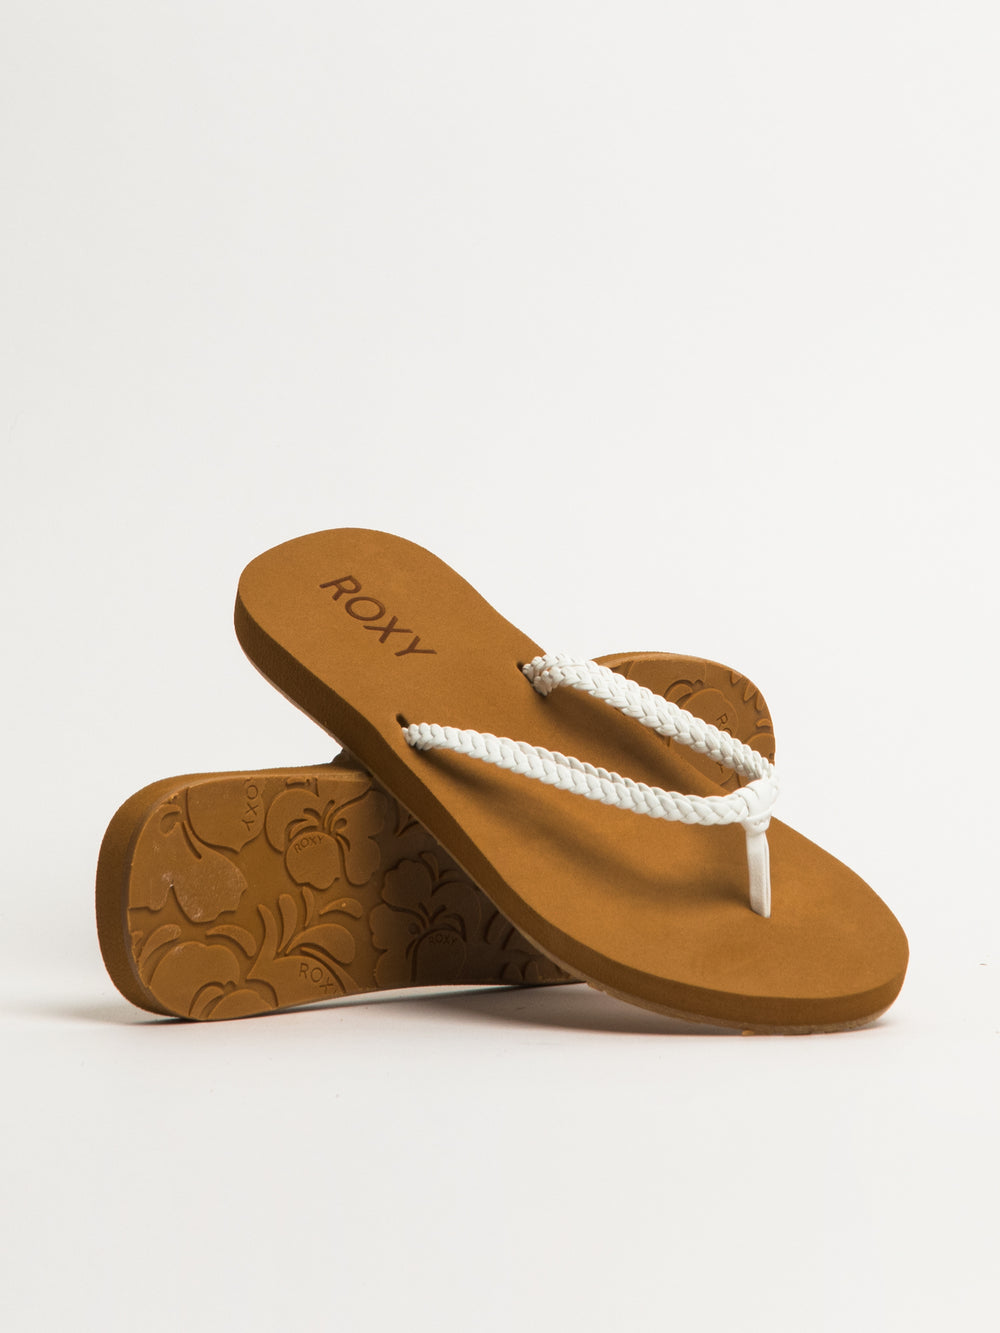 Roxy Costas Sandals - Sandals Women's, Buy online